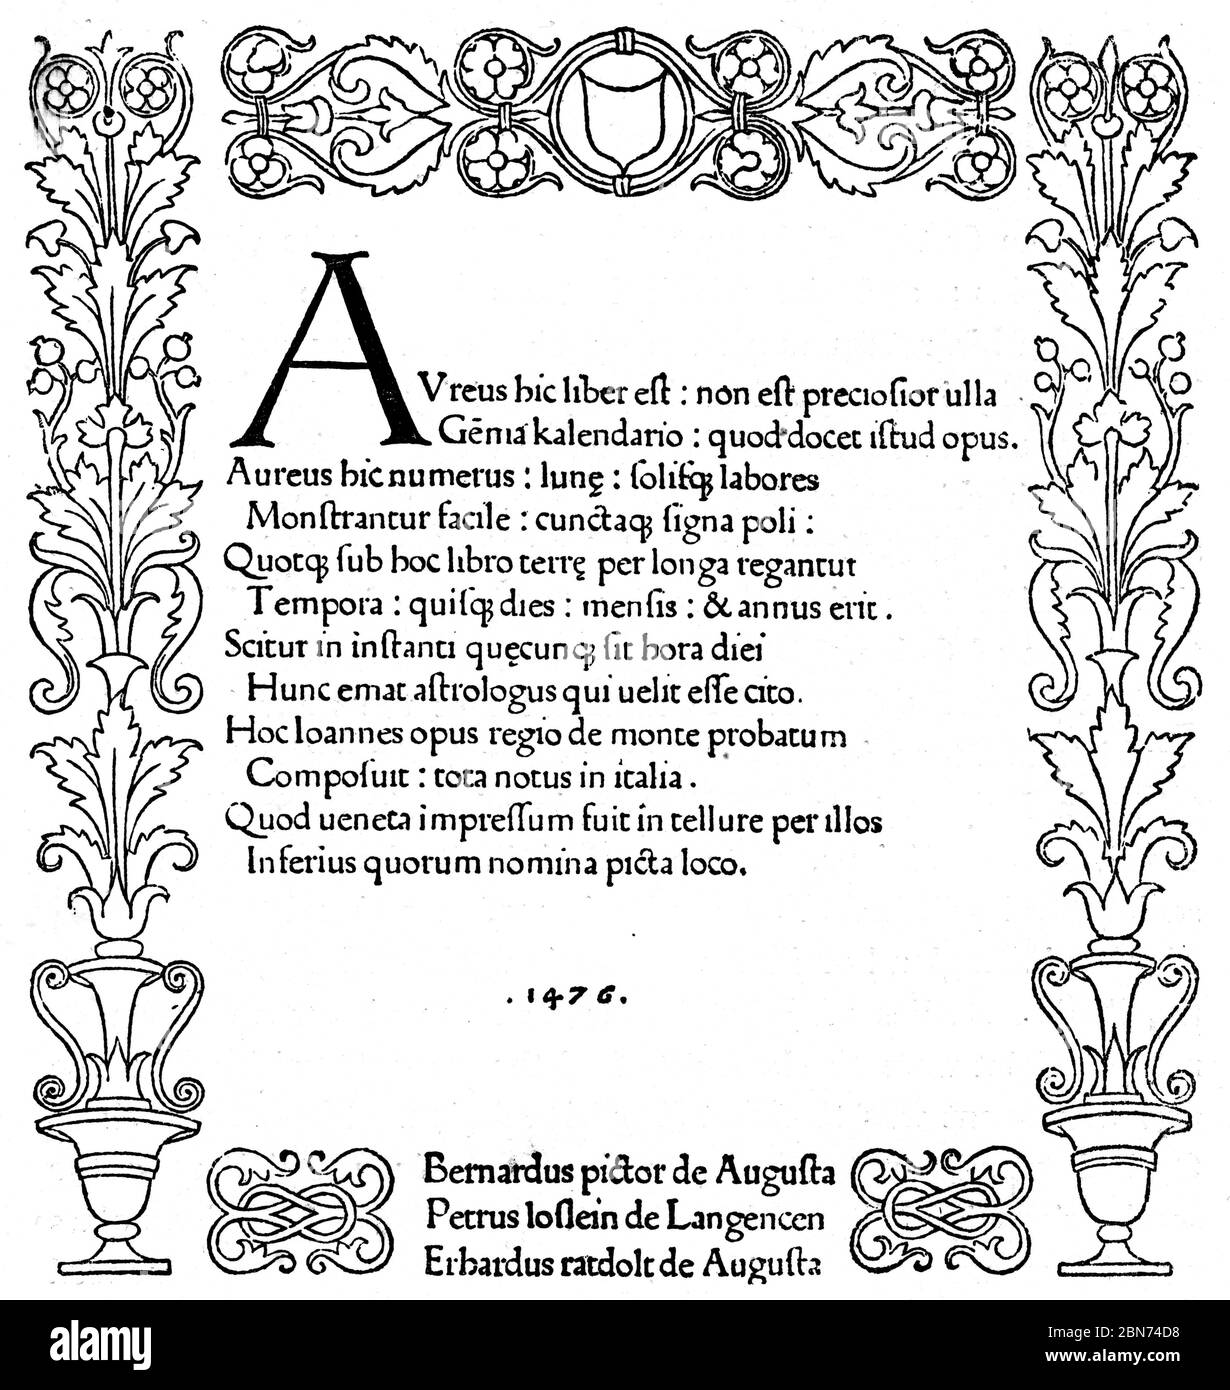 Título de Kalendarium (Calendarium), 1476. Por Regiomontanus (1436-1476). Johannes Müller von Königsberg (1436-1476), más conocido como Regiomontanus (1436-1476), fue un matemático, astrólogo y astrónomo. En 1475 fue llamado a Roma por el Papa Sixto IV para trabajar en la reforma del calendario. Foto de stock